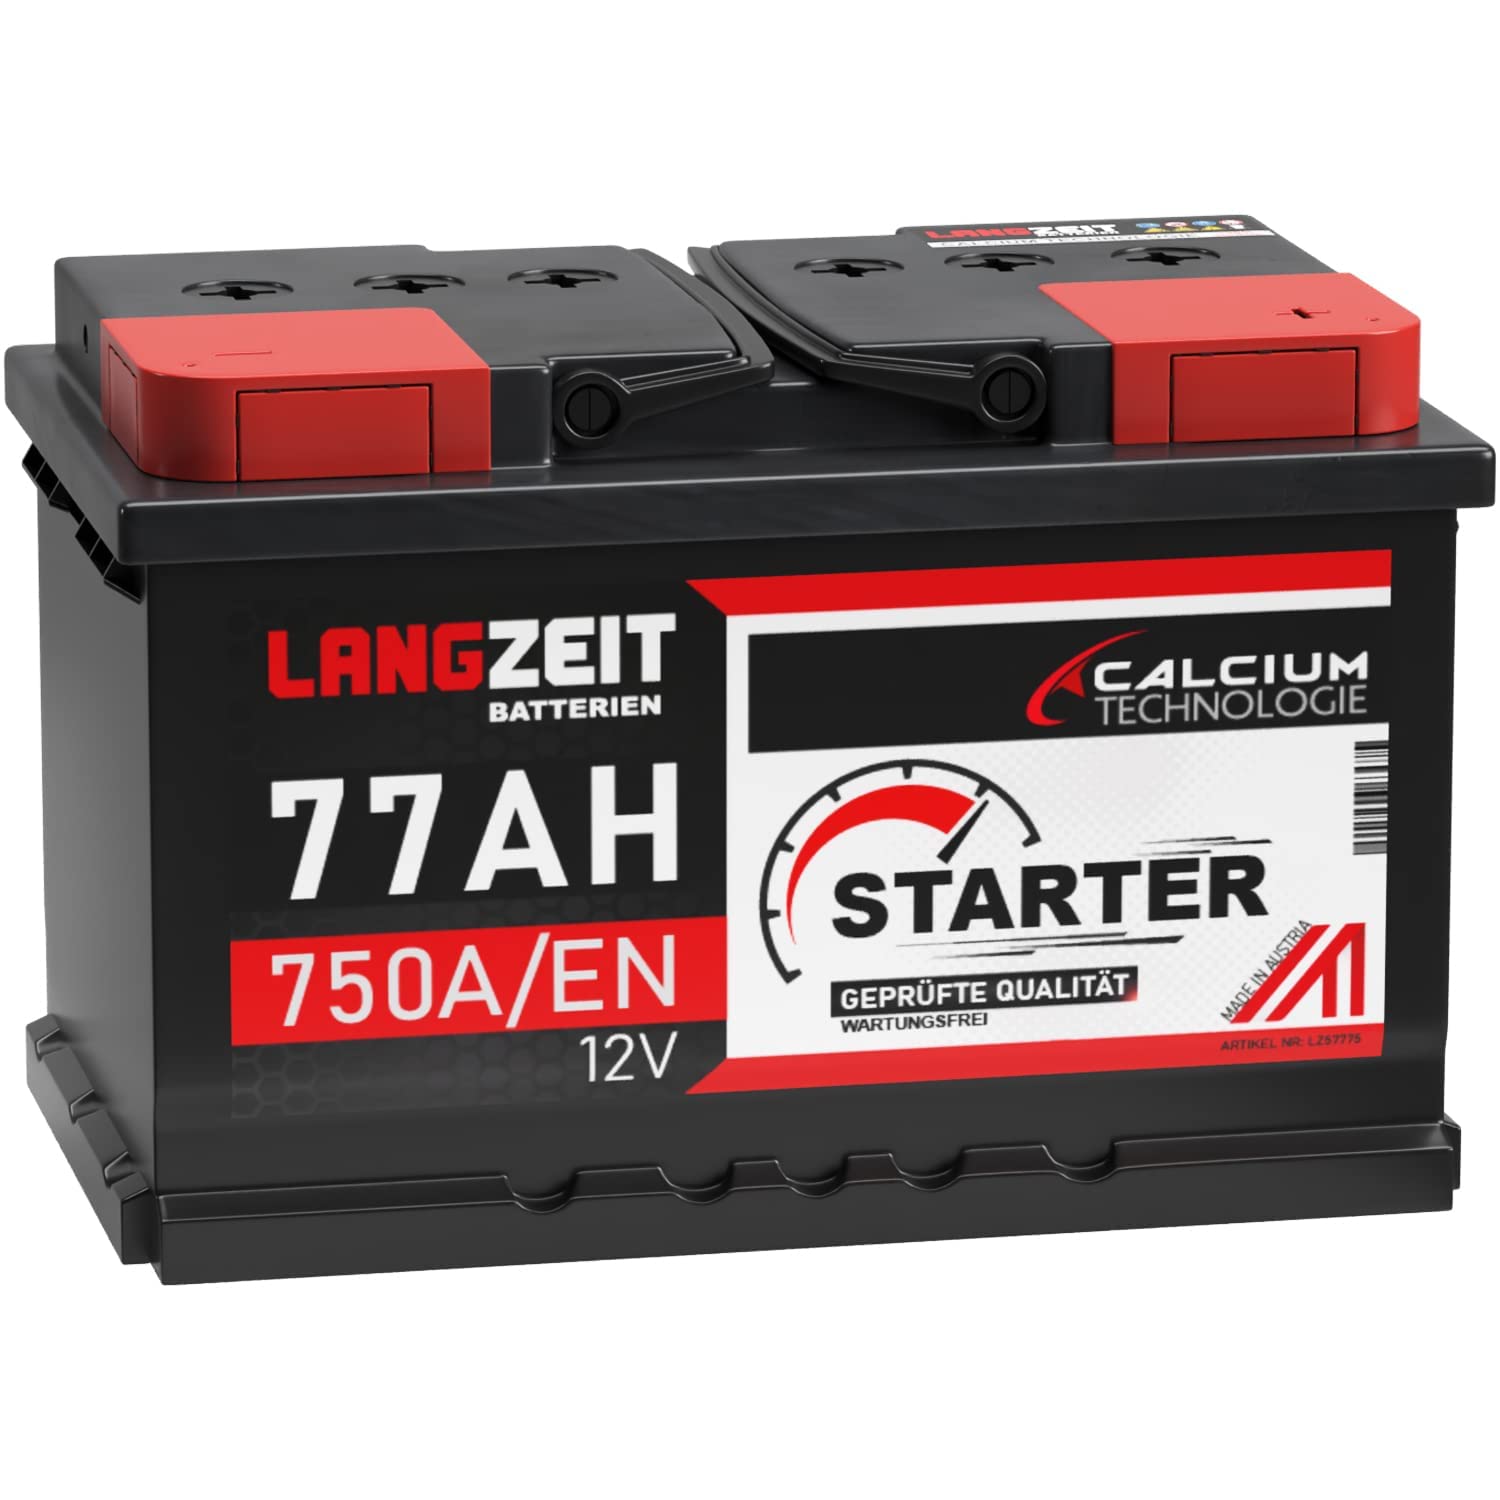 LANGZEIT Autobatterie 77AH 12V 750A/EN Starterbatterie +30% mehr Leistung ersetzt Batterie 75Ah 72Ah 74Ah 70Ah Starter Batterie